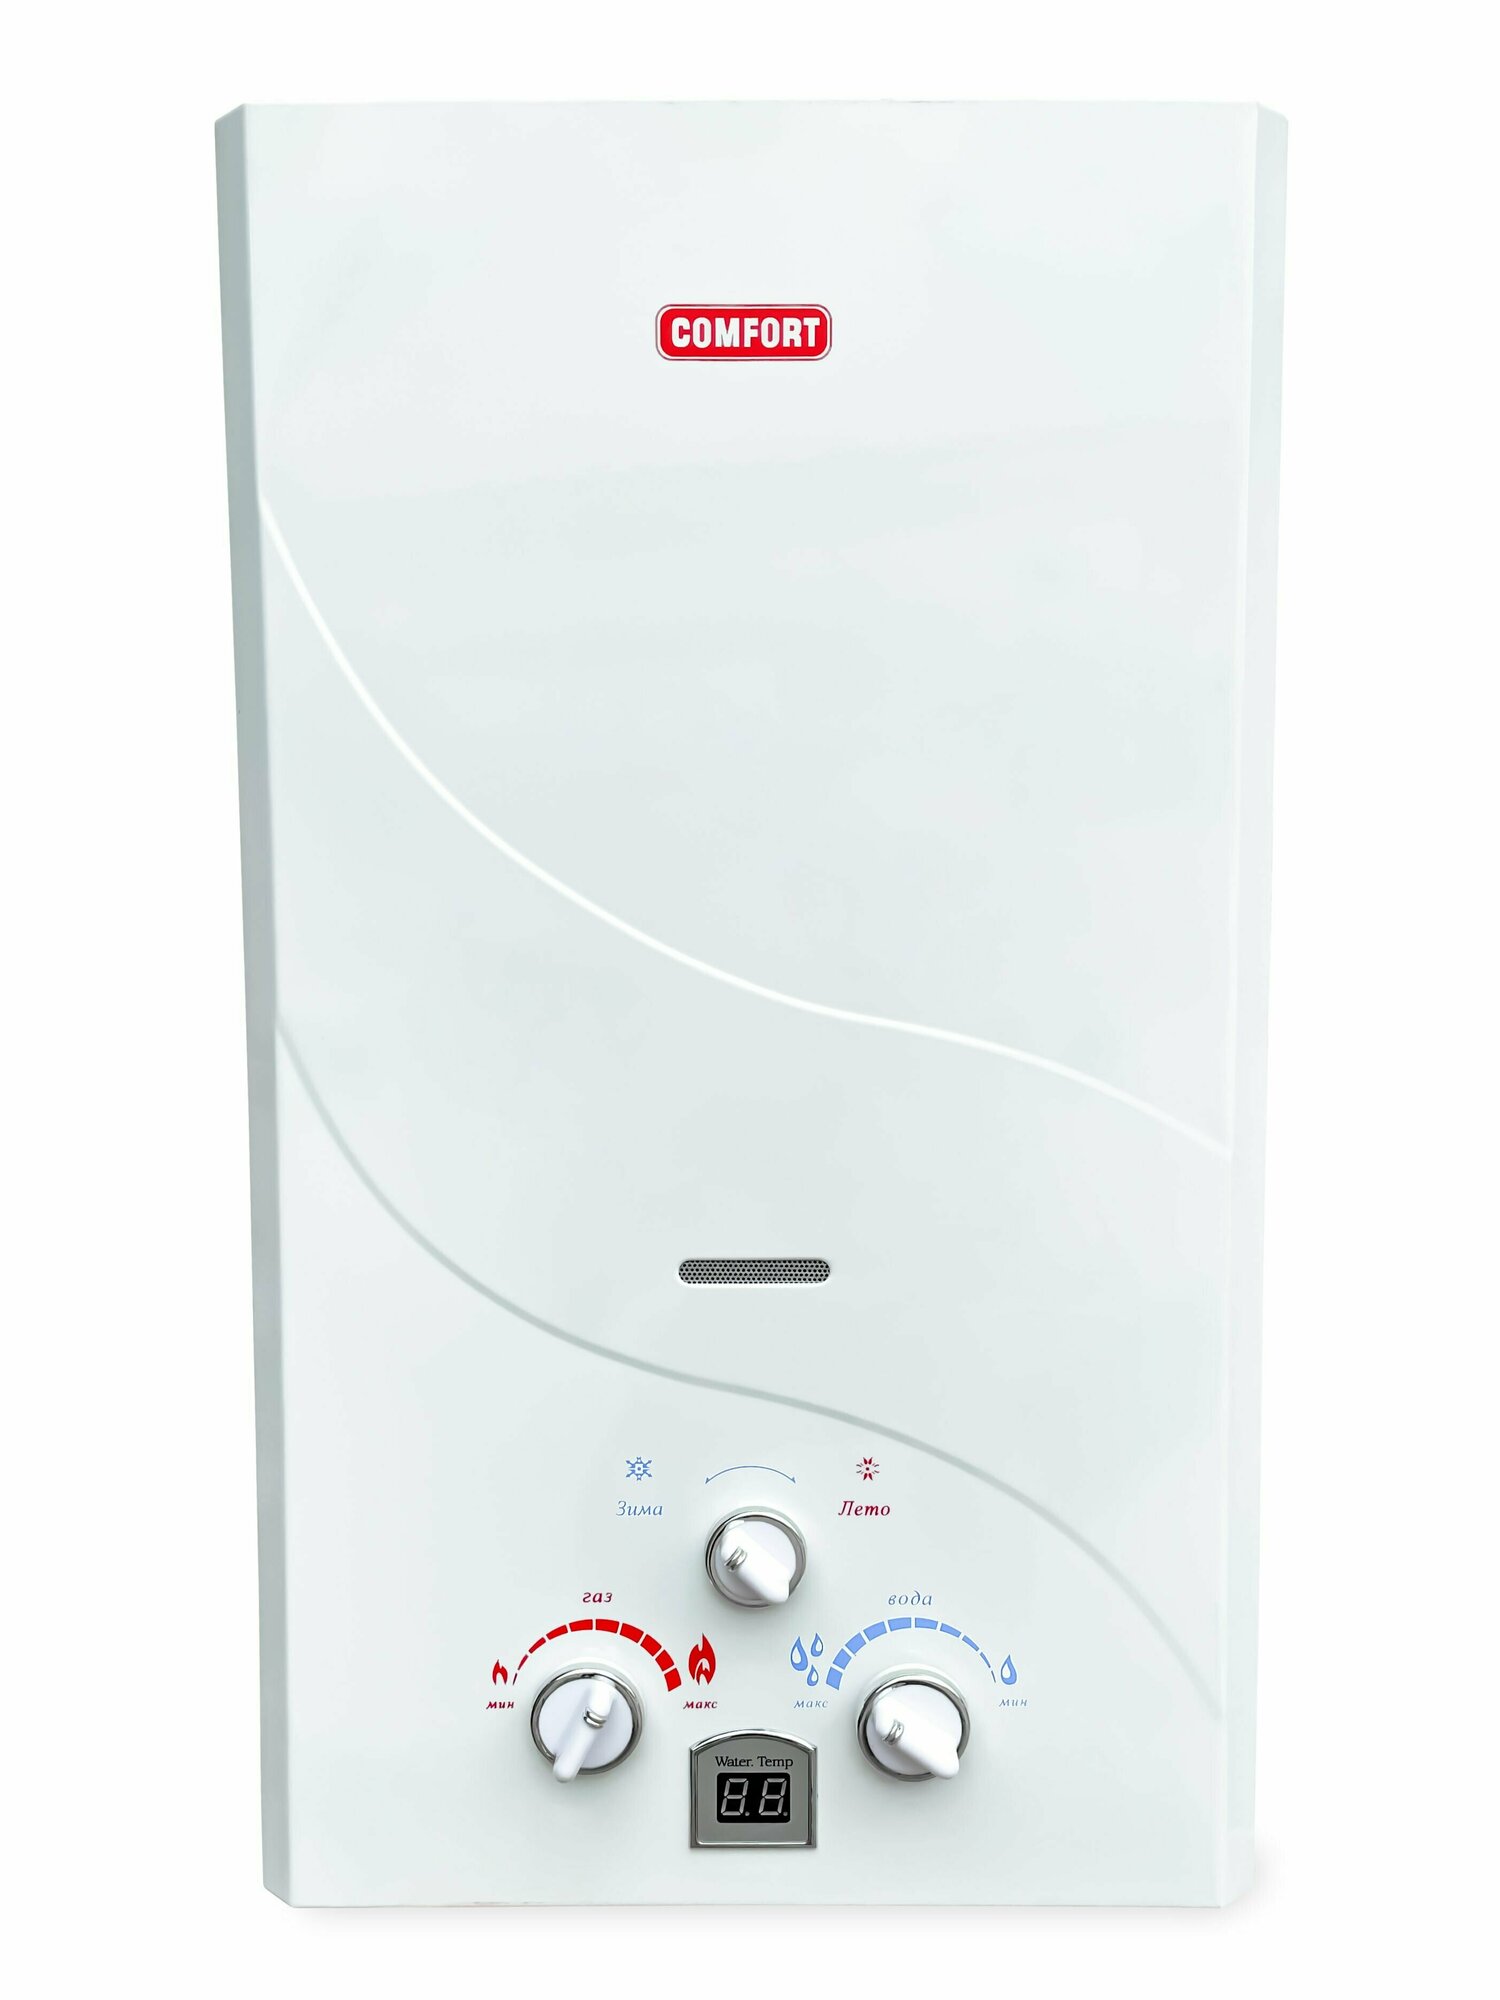 Газовый водонагреватель "COMFORT" модель 10 A, дымоходная, белый цвет панели, с дисплеем